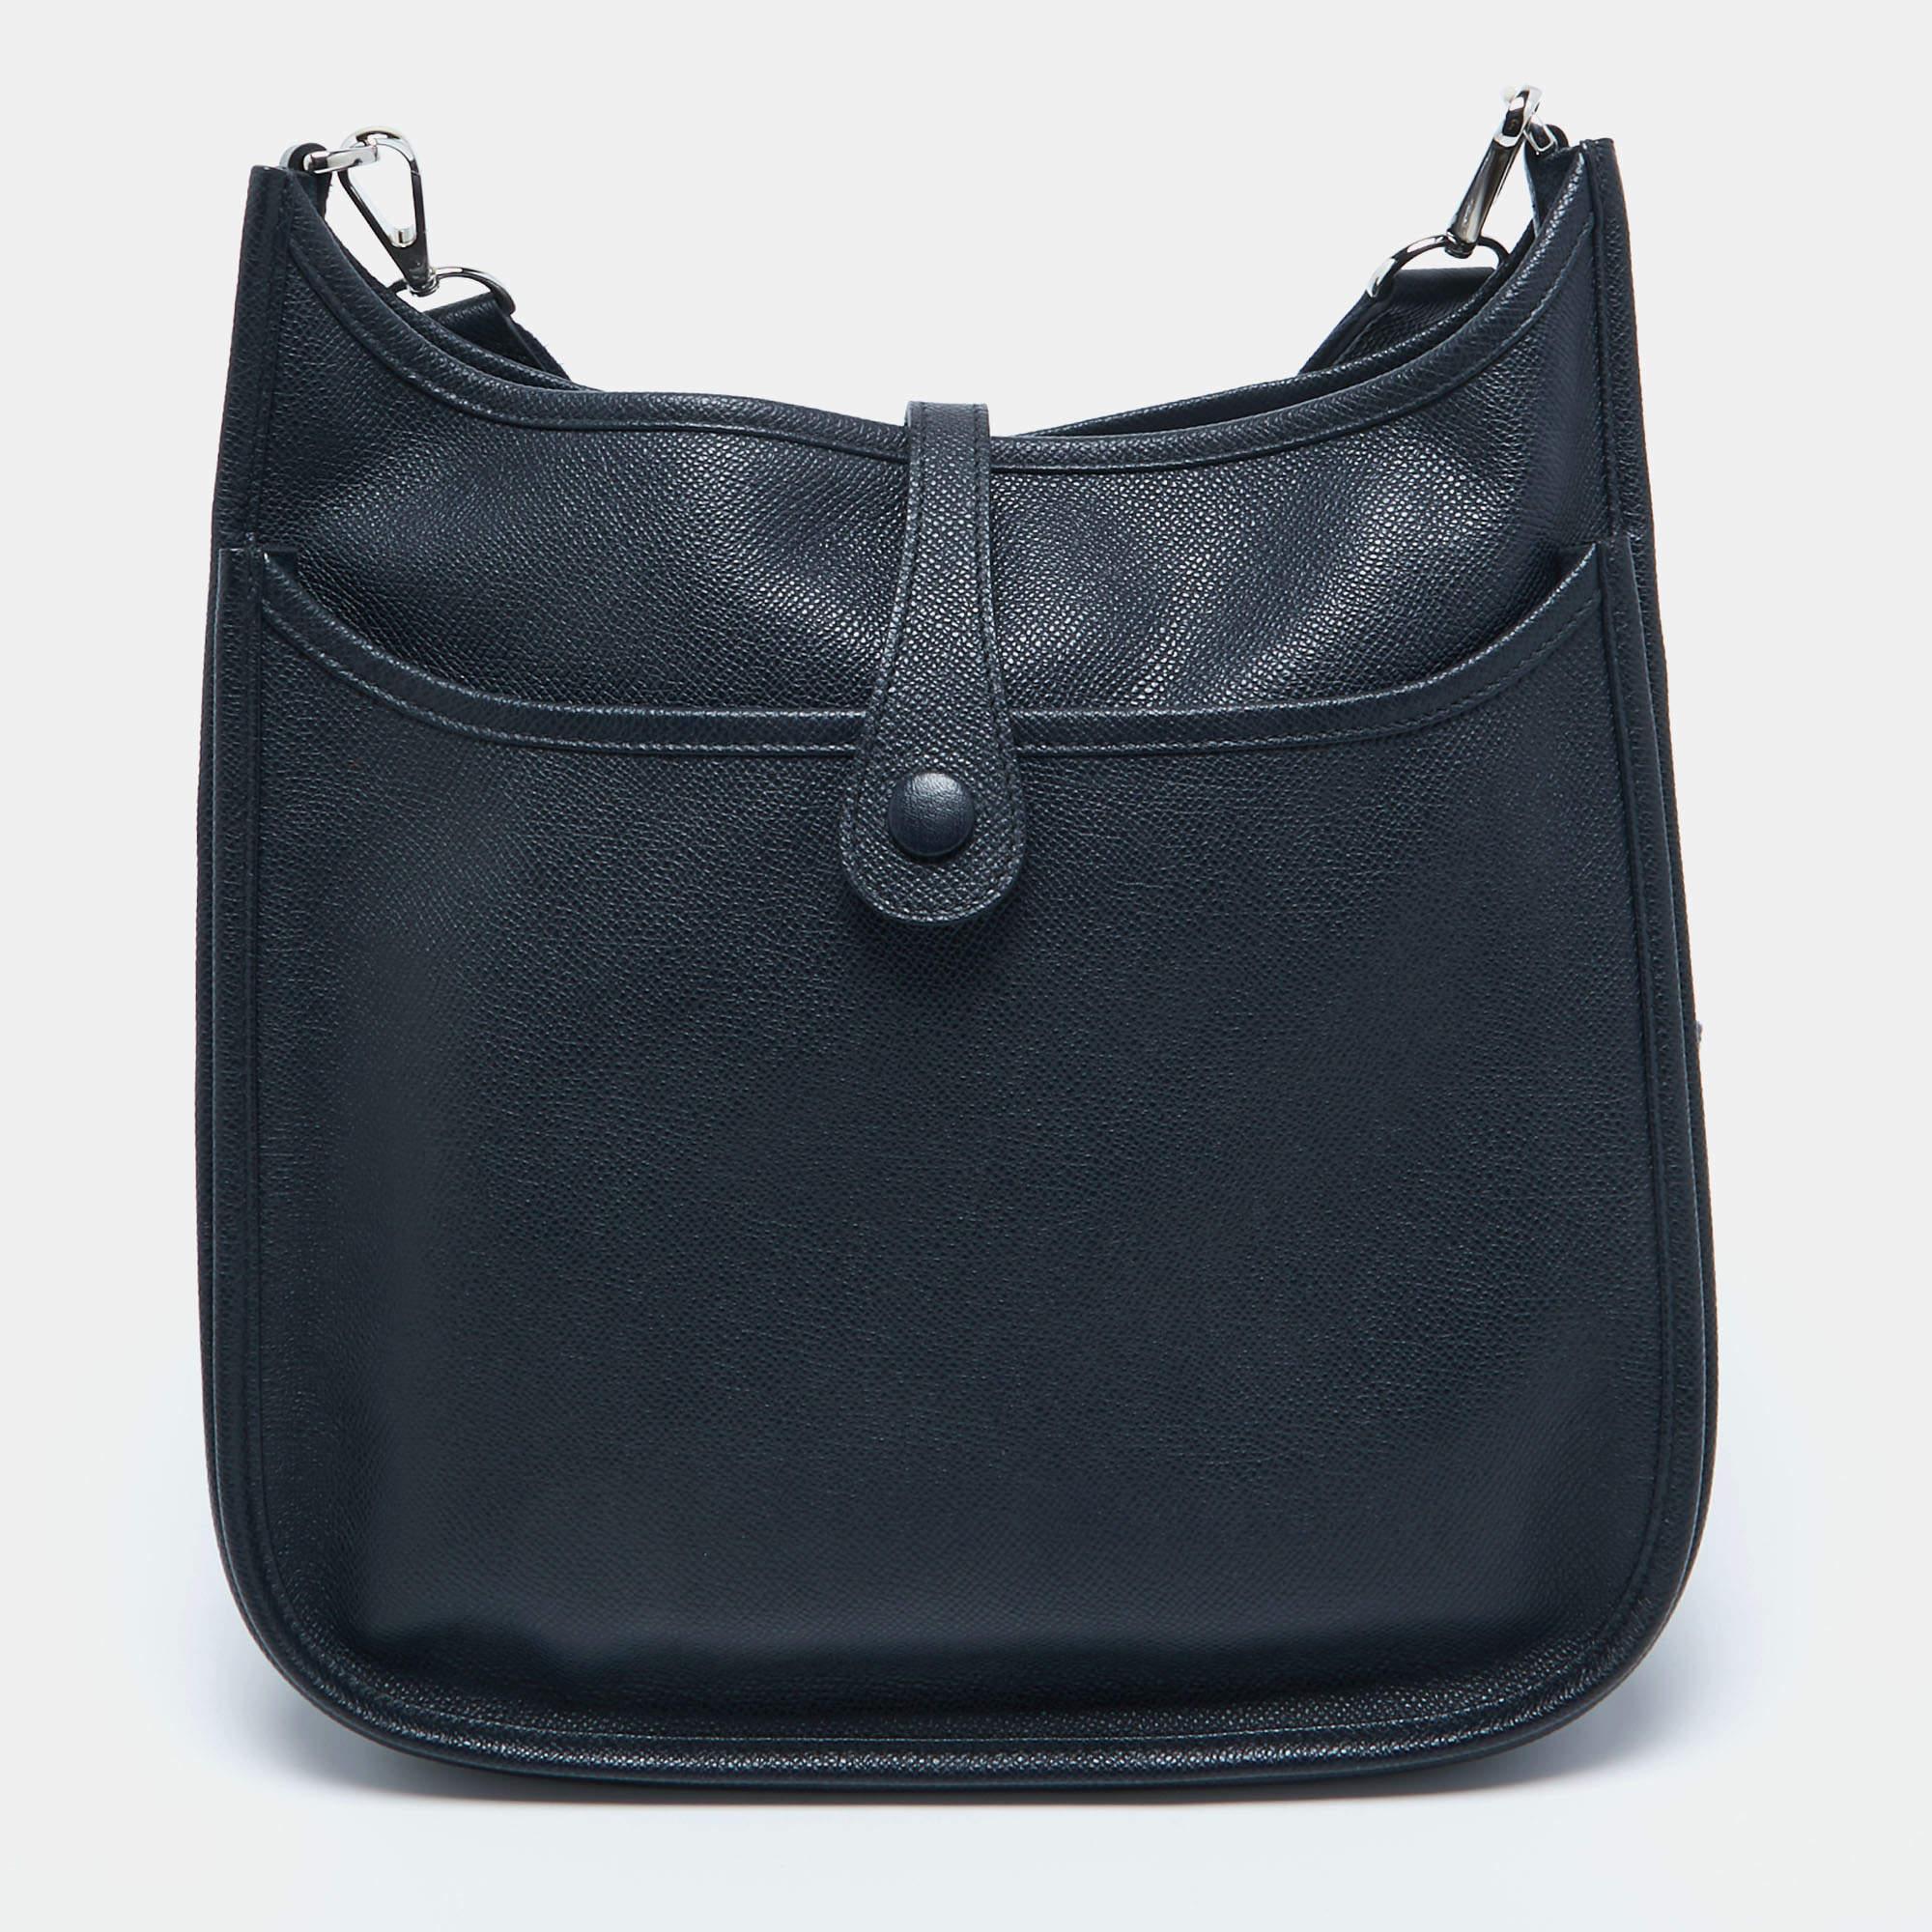 Die Hermès Evelyne III PM Bag ist ein raffiniertes und vielseitiges Accessoire. Sie ist aus luxuriösem Epsom-Leder in einem atemberaubenden Blauton gefertigt und verfügt über das kultige, perforierte H-Logo, einen geräumigen Innenraum und einen